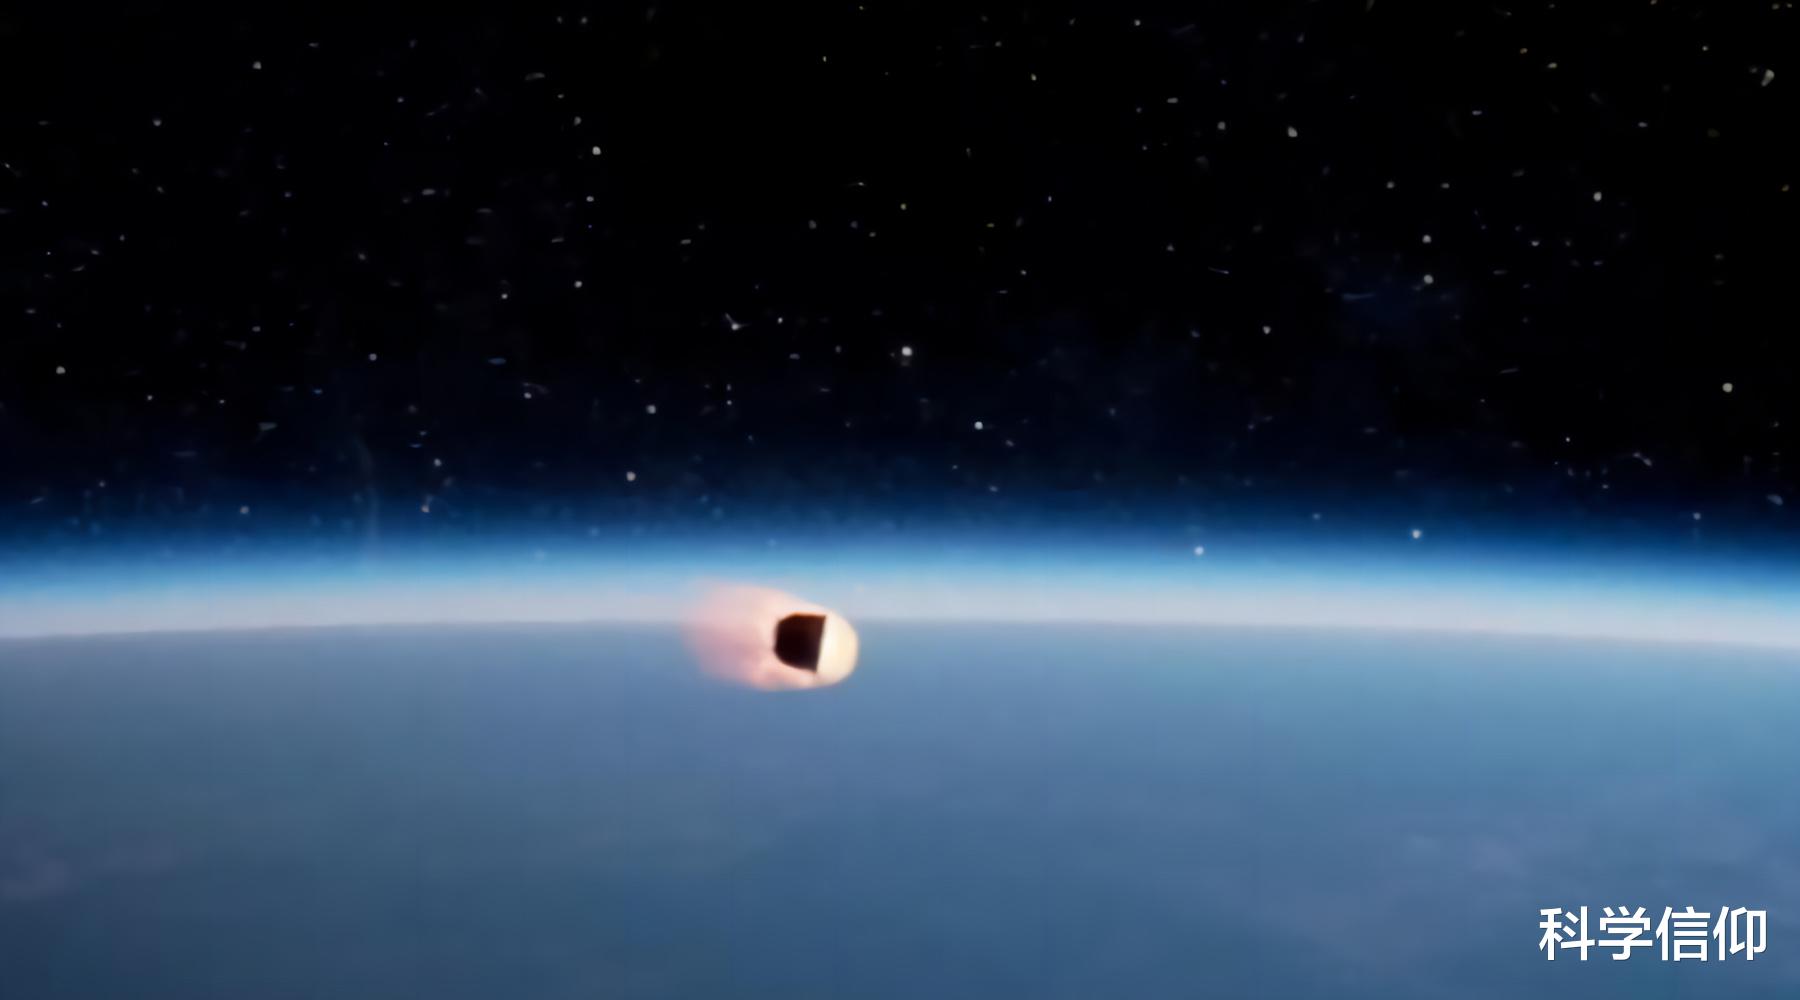 暗物质 是隼鸟二号小行星取样难，还是嫦娥五号采集月壤难？登月难得多